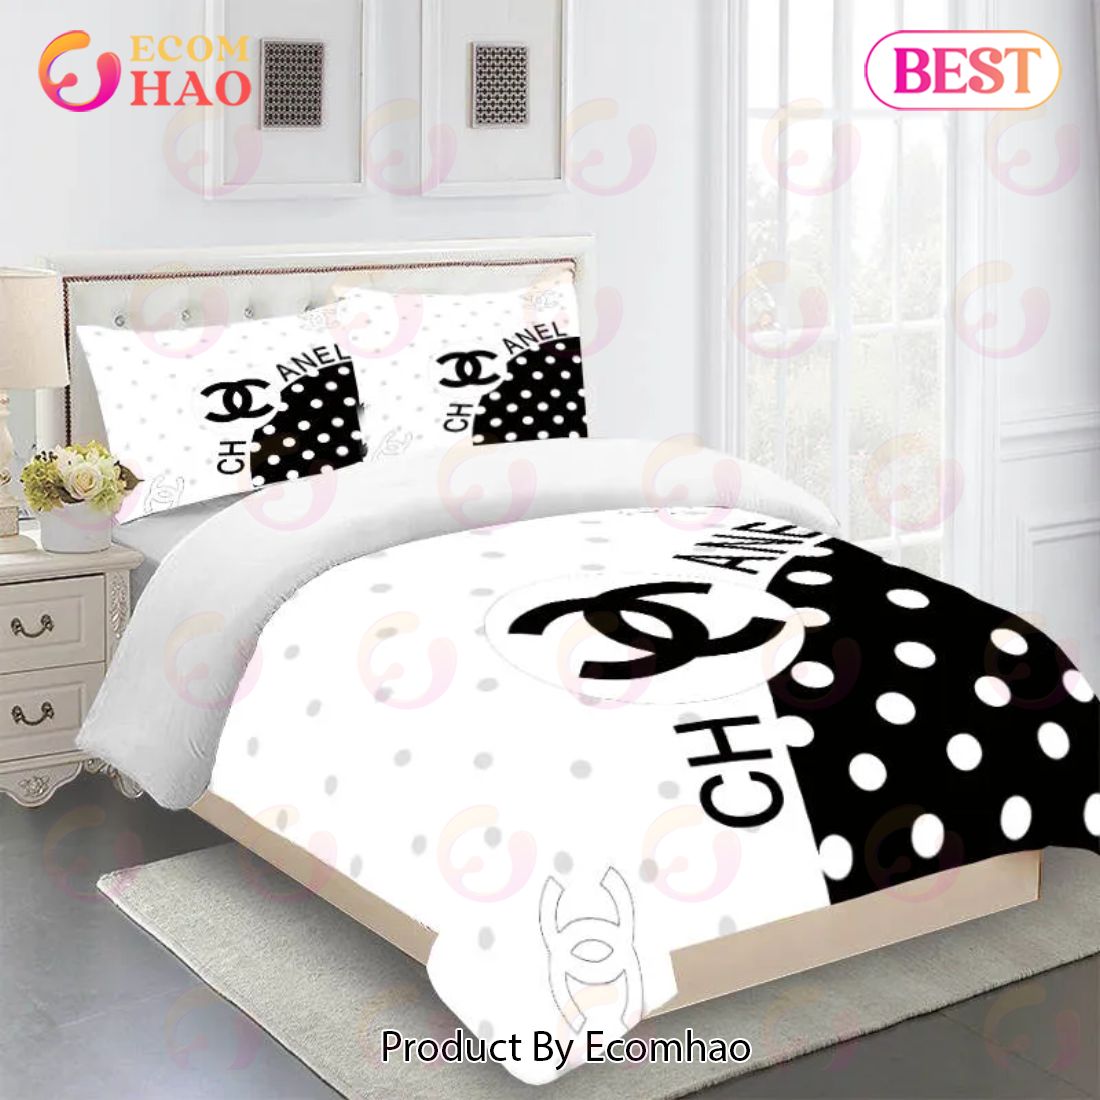 Black White Chanel Bedding Sets Luxury Brand Bed Sets Bedroom Sets Comforter Sets Duvet Cover Bedspread For Home Decor Trending 2023 For Home